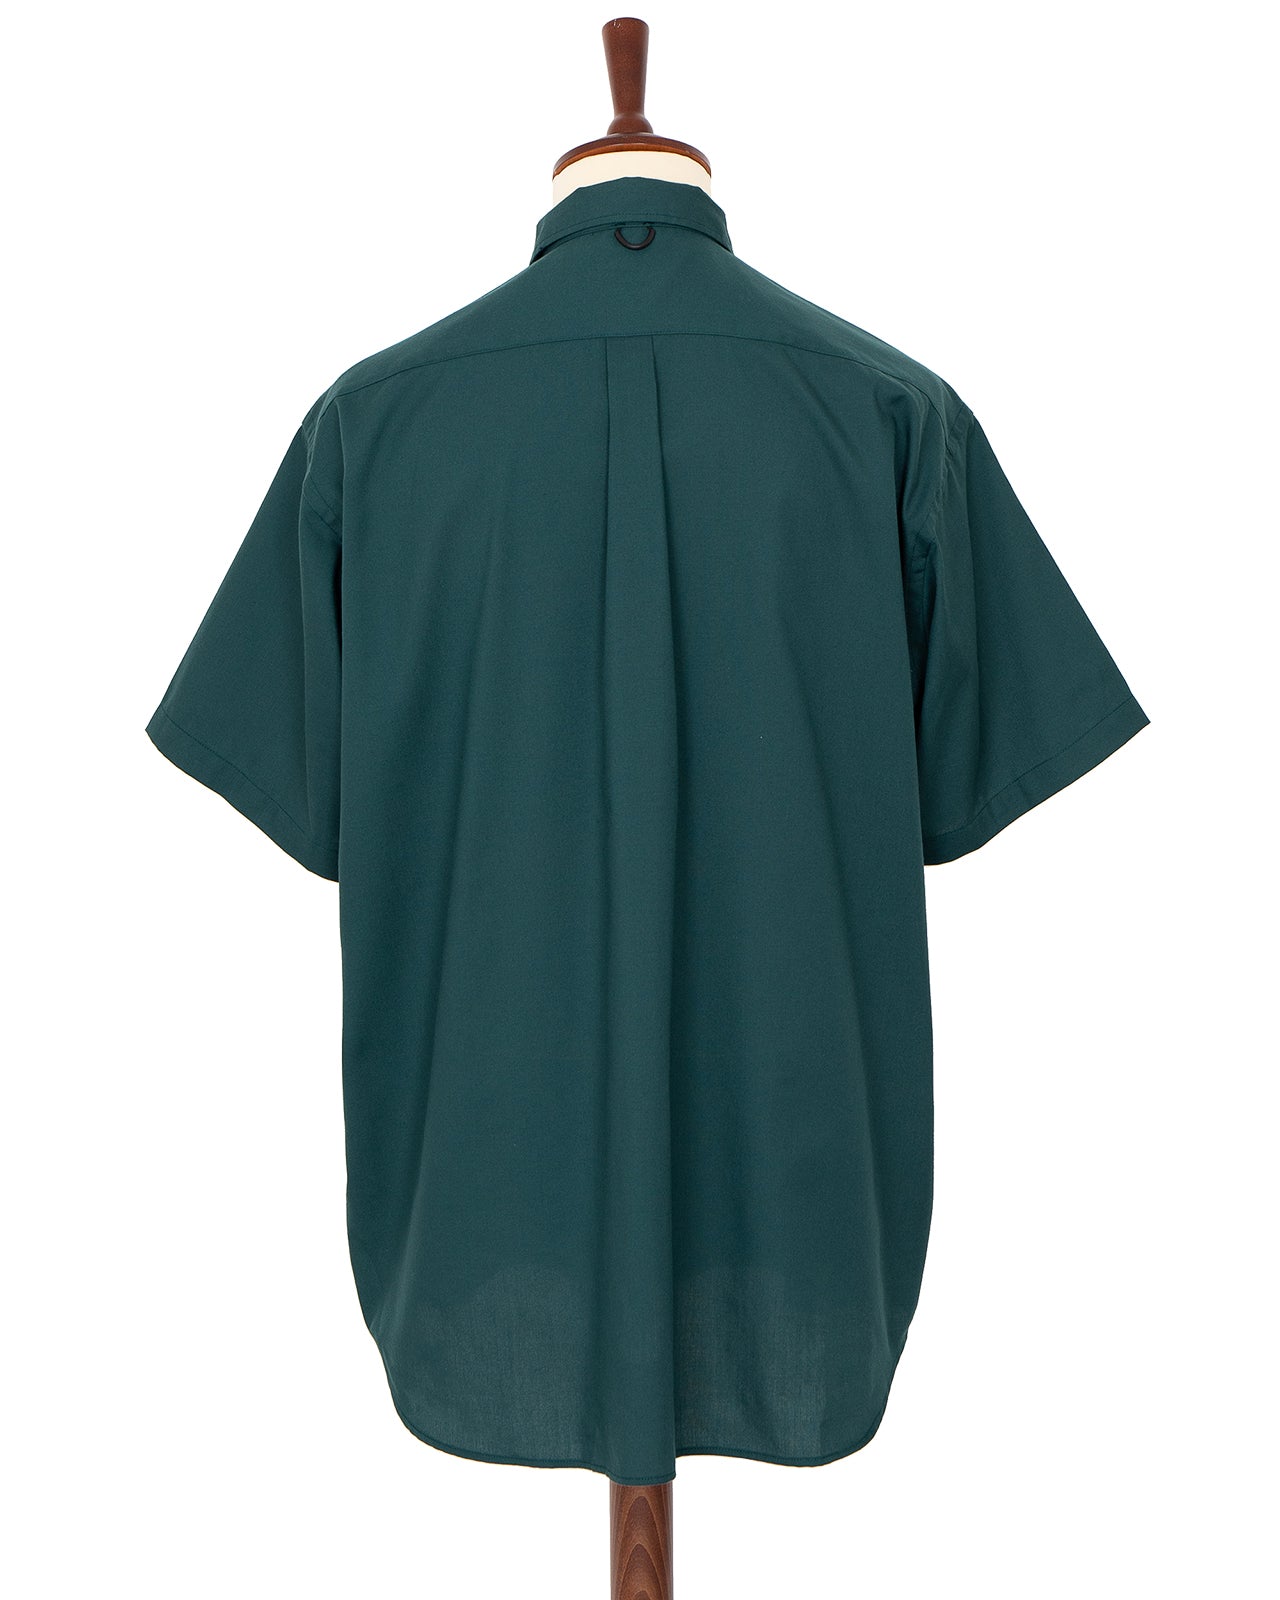 Daiwa Pier39 Tech Button Down Shirt S/S OX, Dark Green – Pancho 